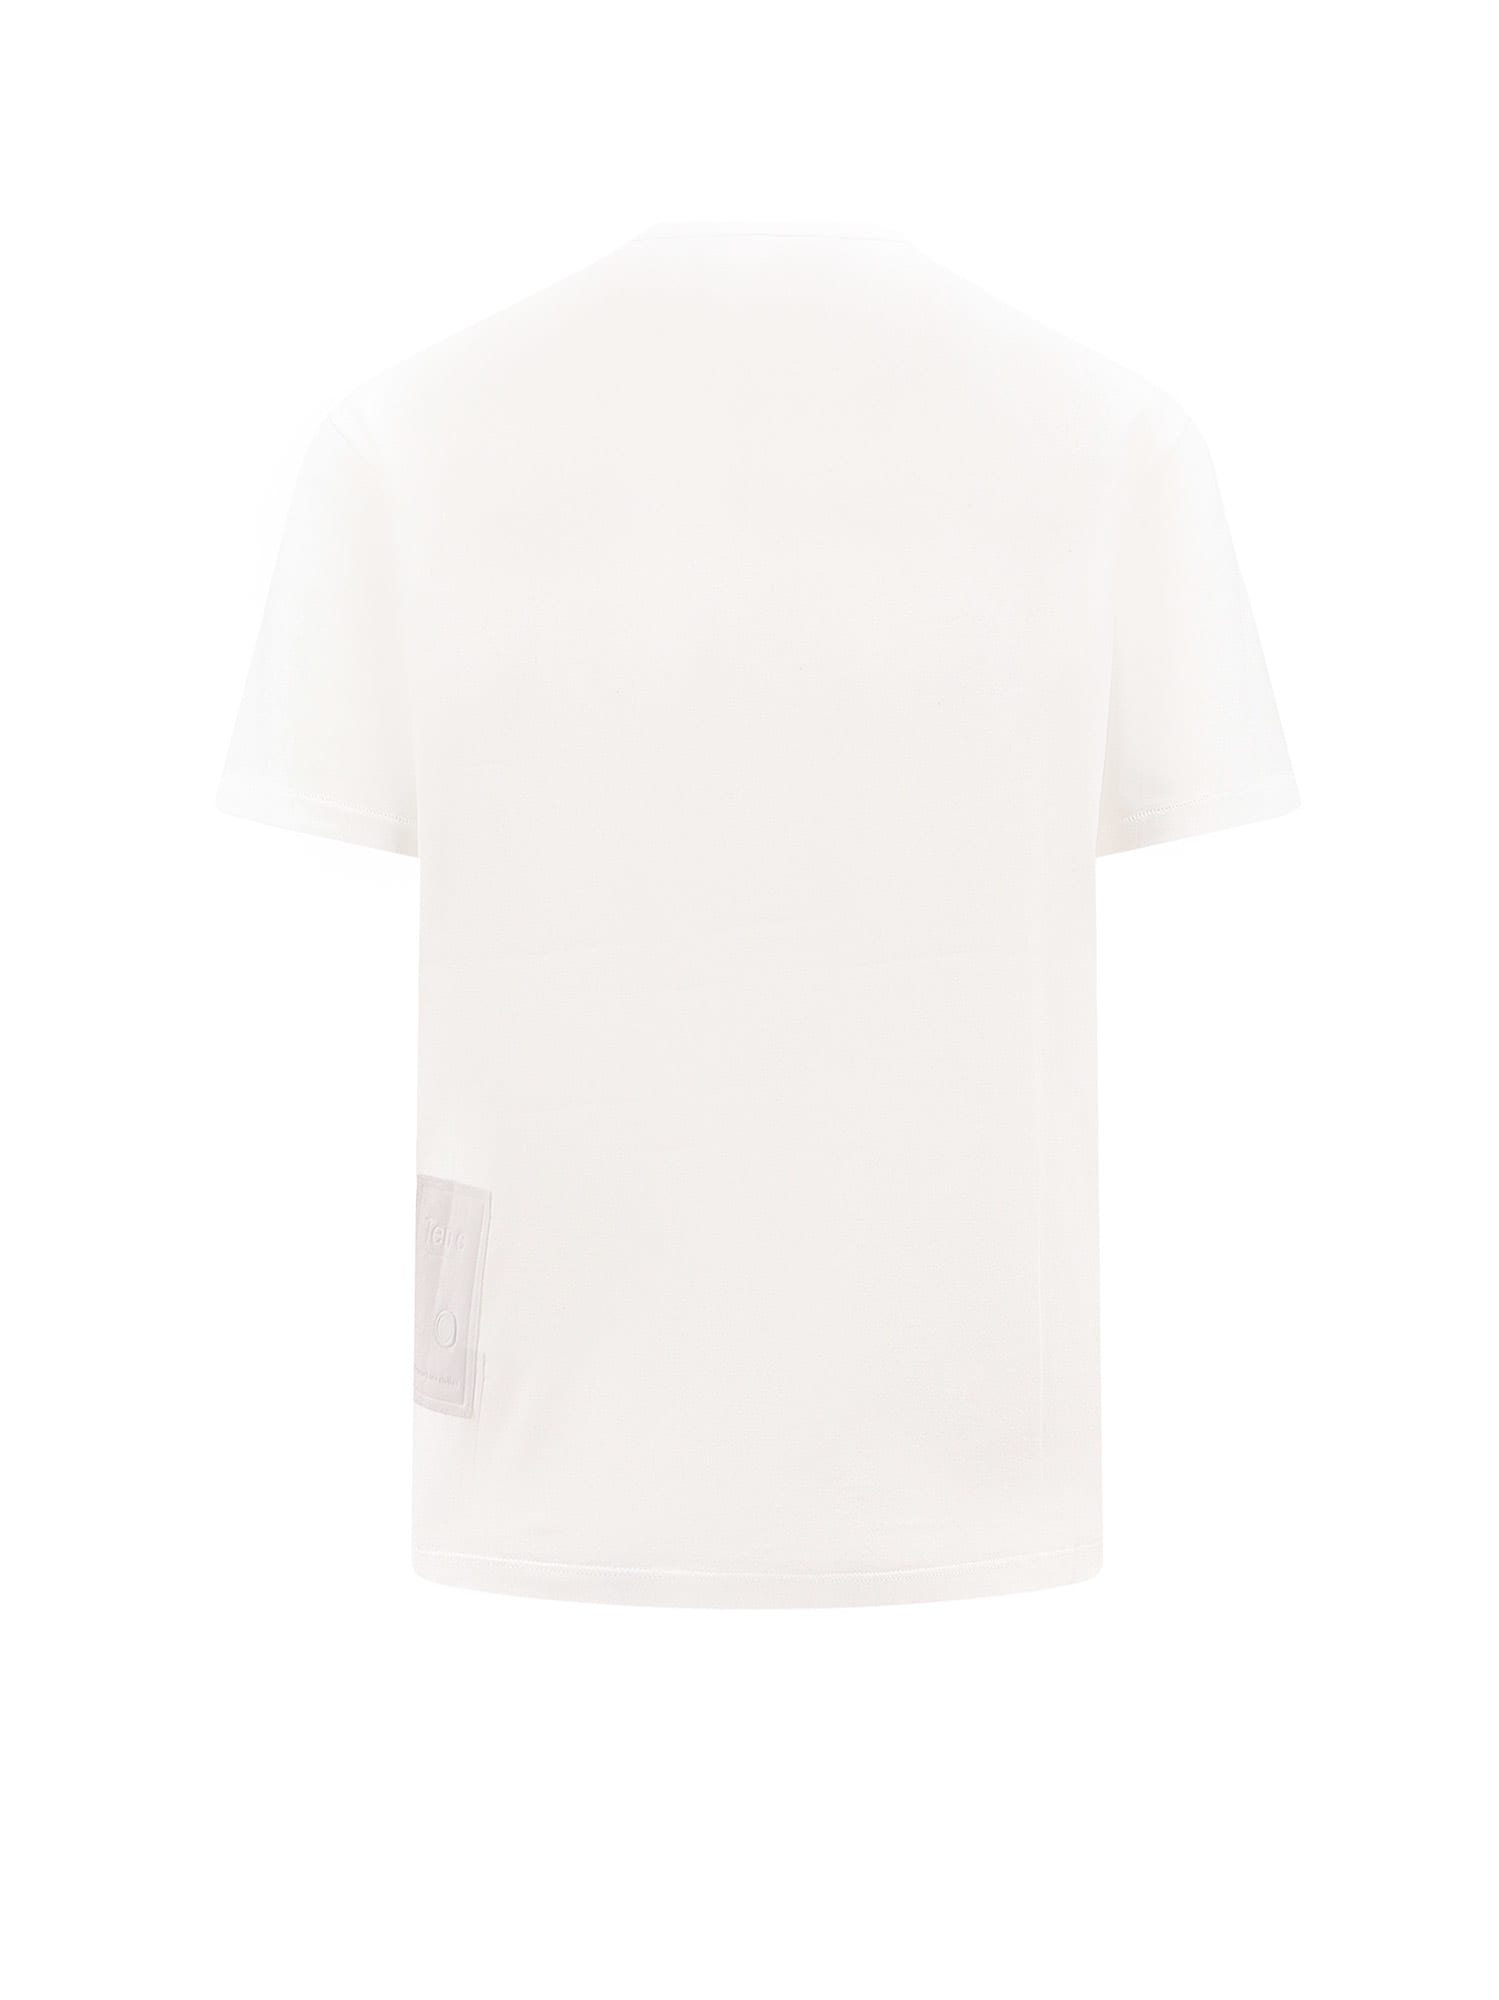 Shop Ten C T-shirt In White